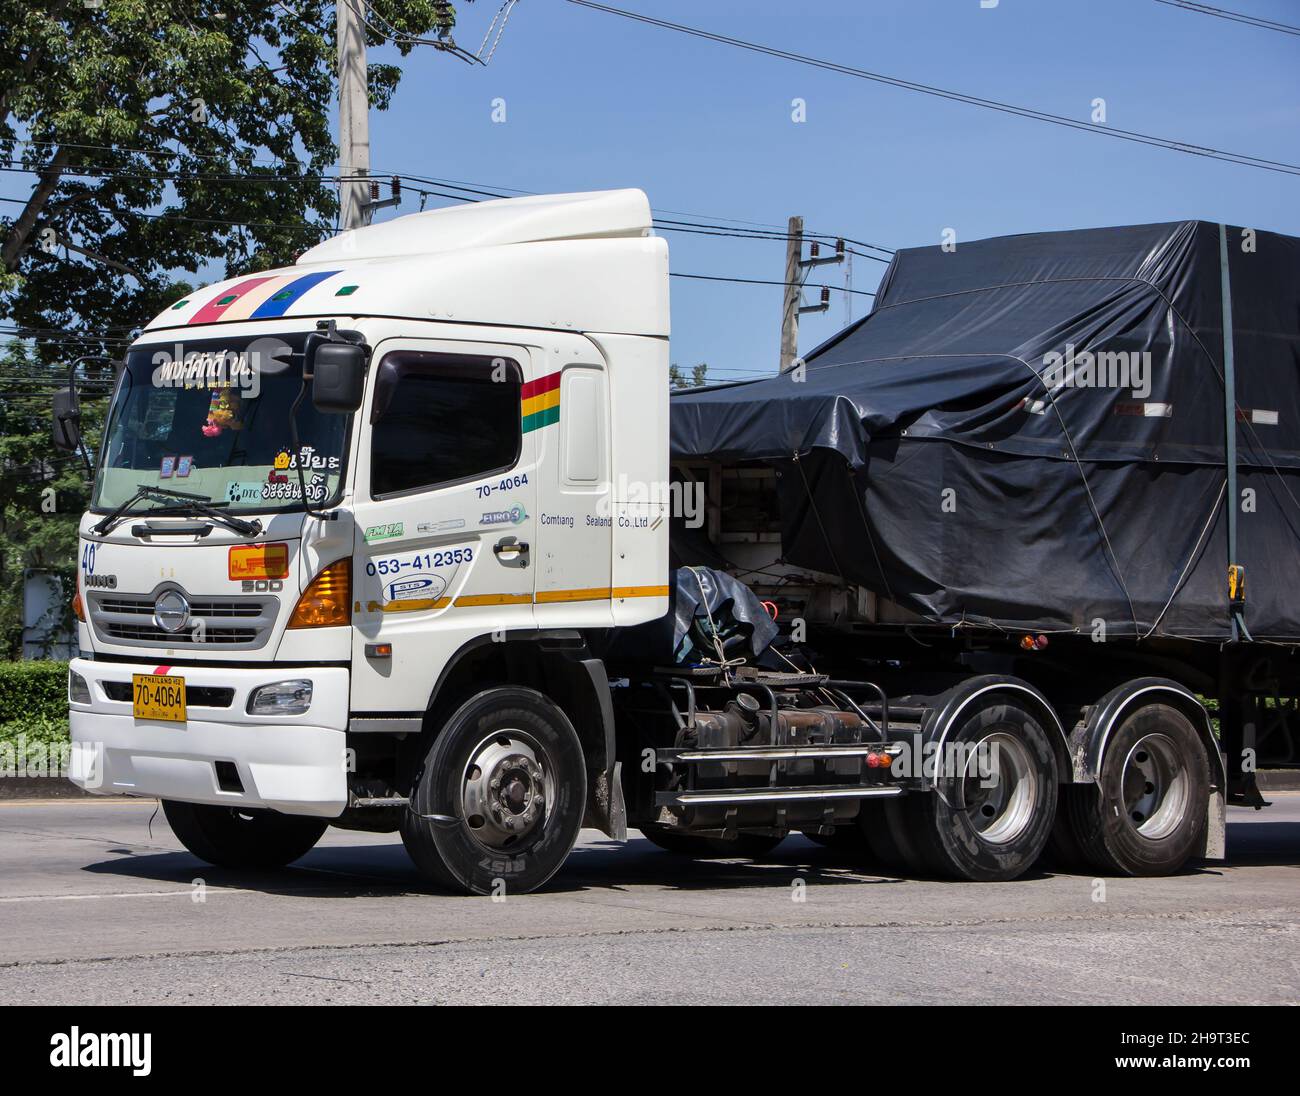 Chiangmai, Thaïlande - octobre 6 2021 : camion-remorque à conteneurs de la PongSak transport Company.Photo sur la route n°1001 à environ 8 km du centre ville, Banque D'Images